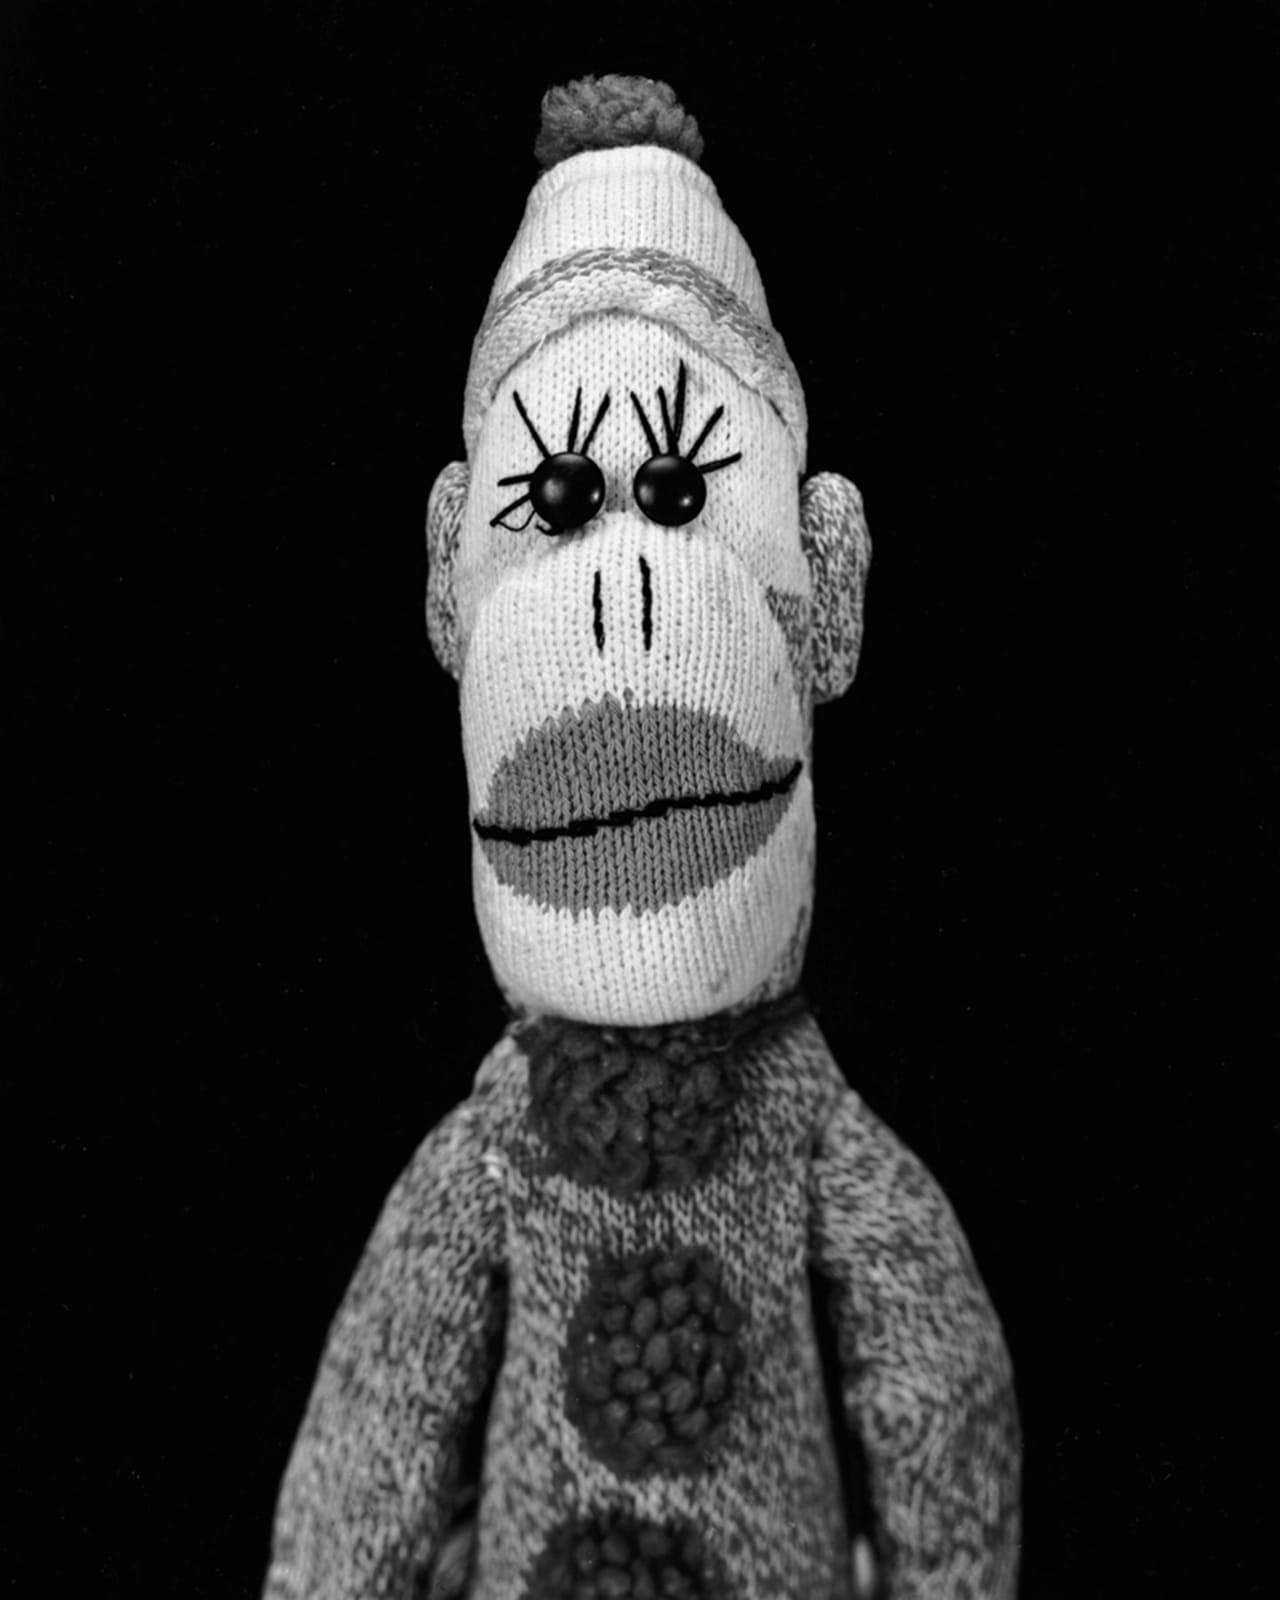 Arne Svenson, Sock Monkey 58, 2002